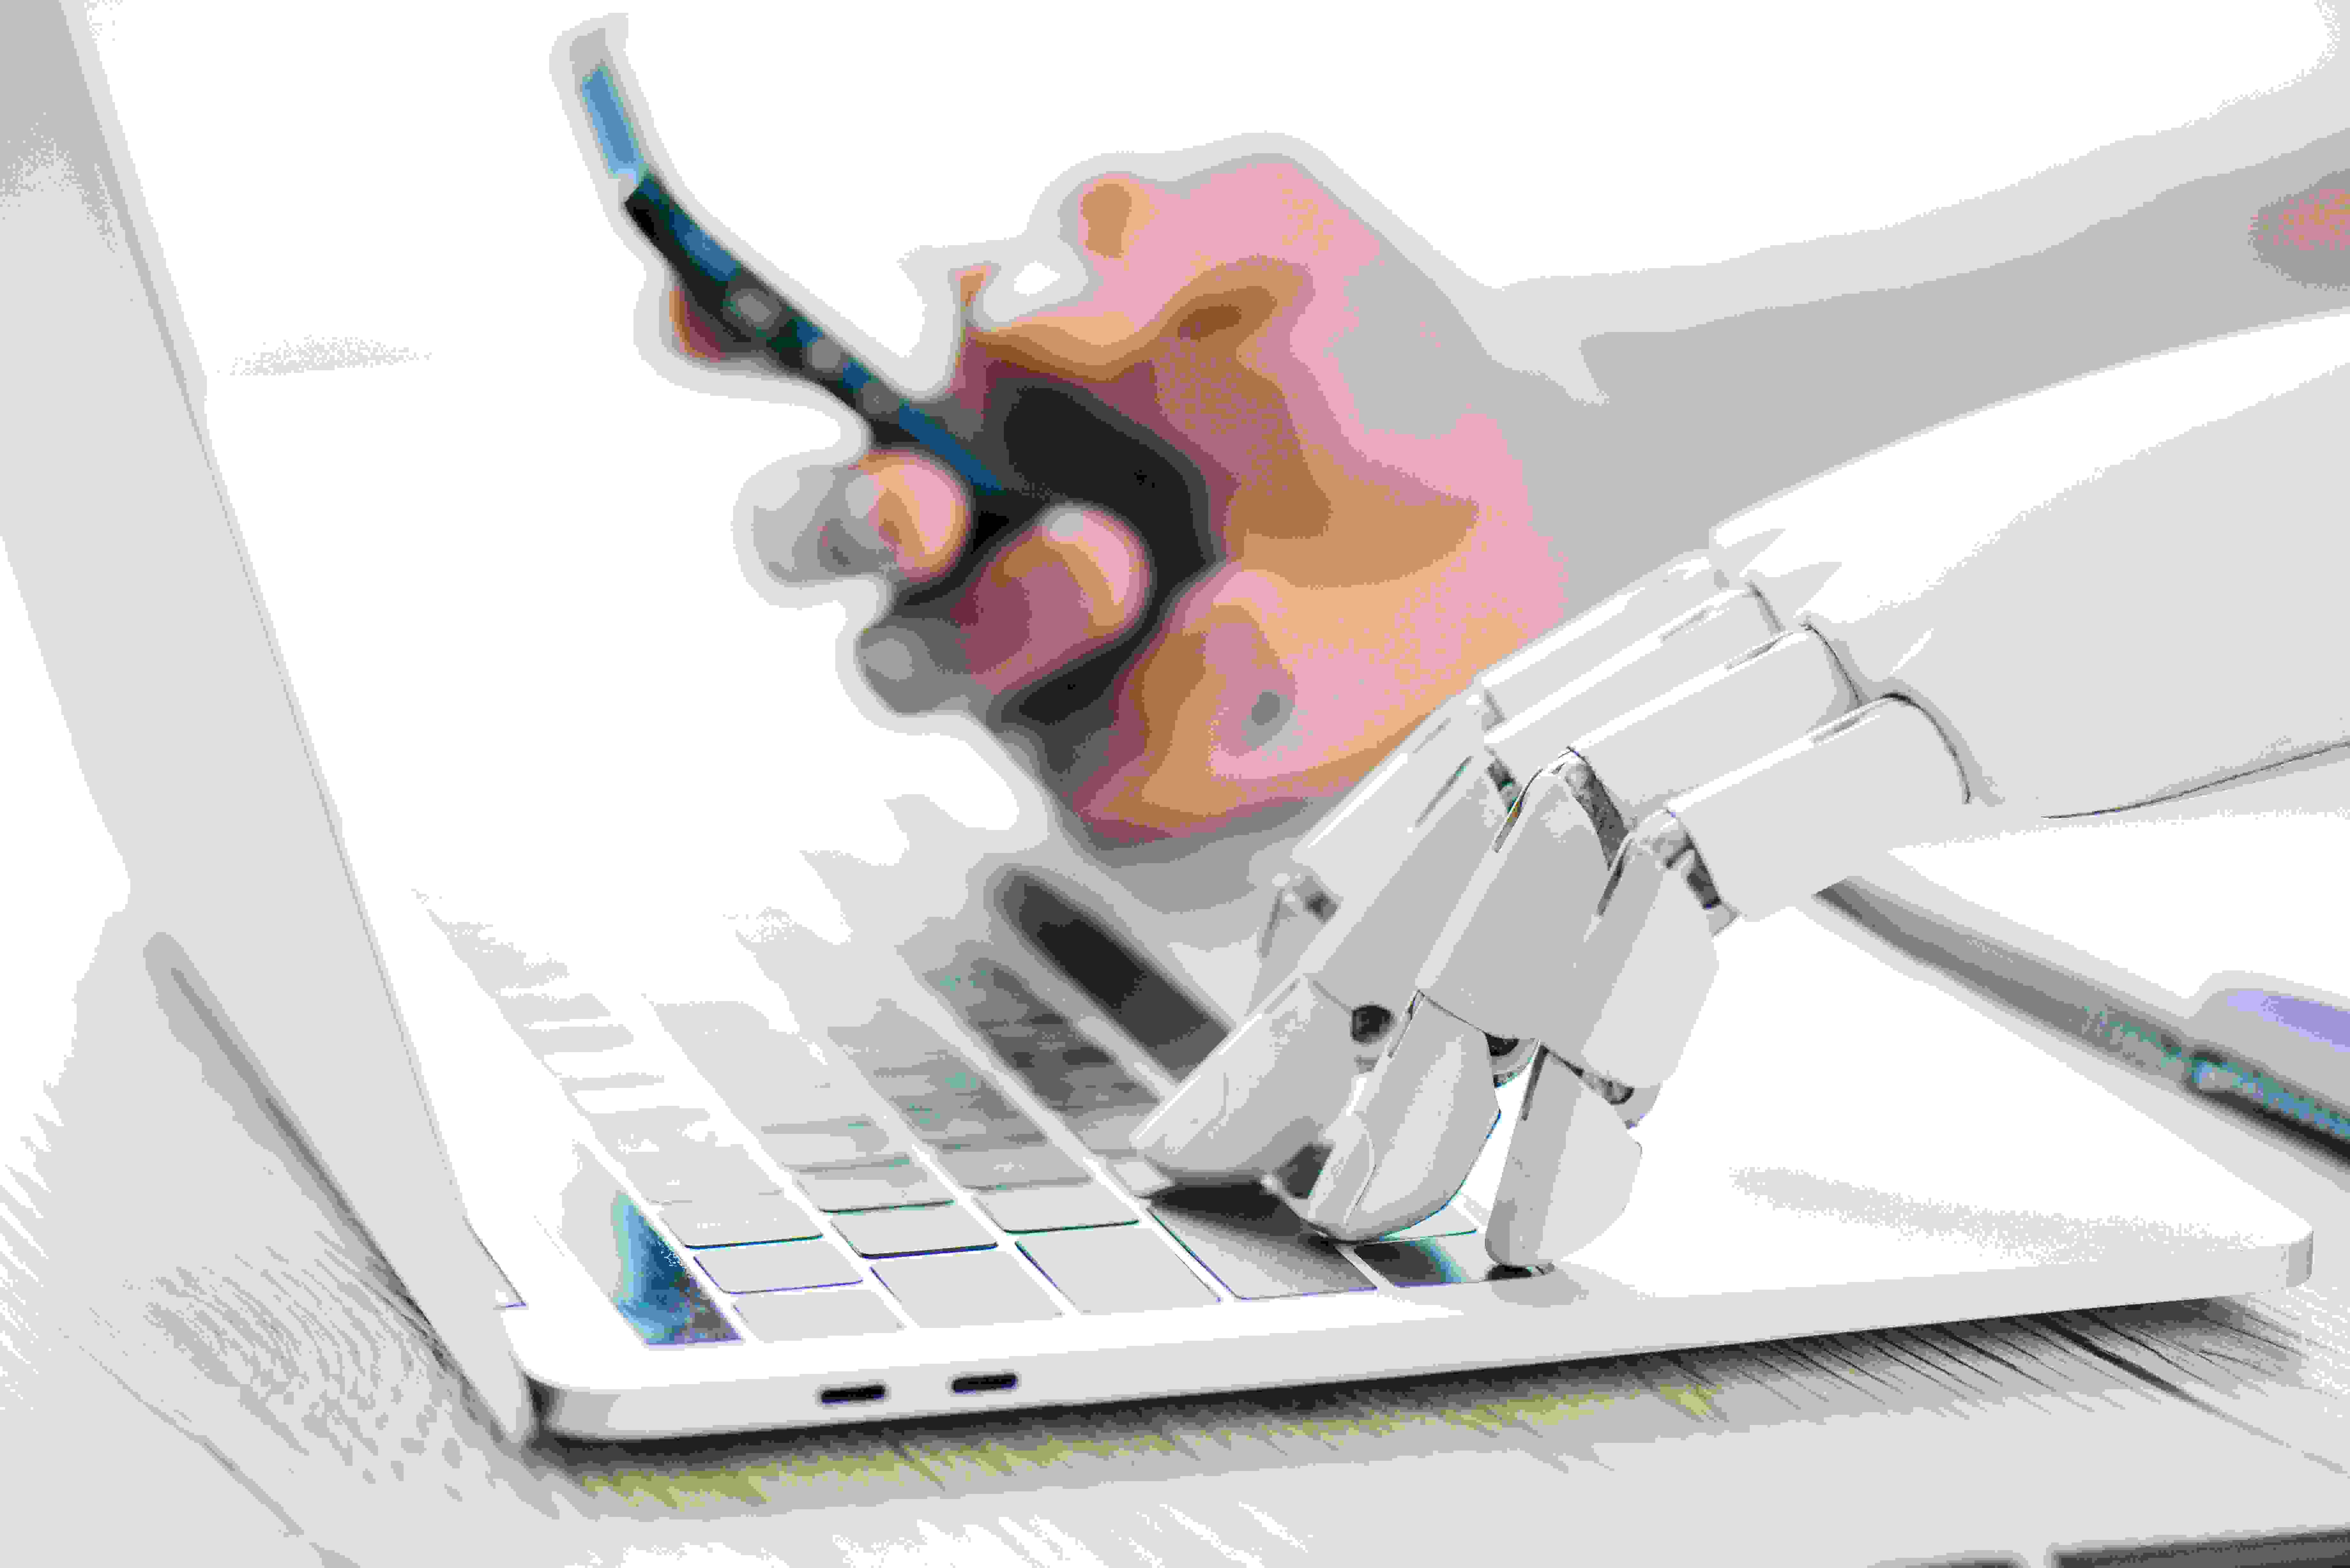 Robot And Human On Keyboard